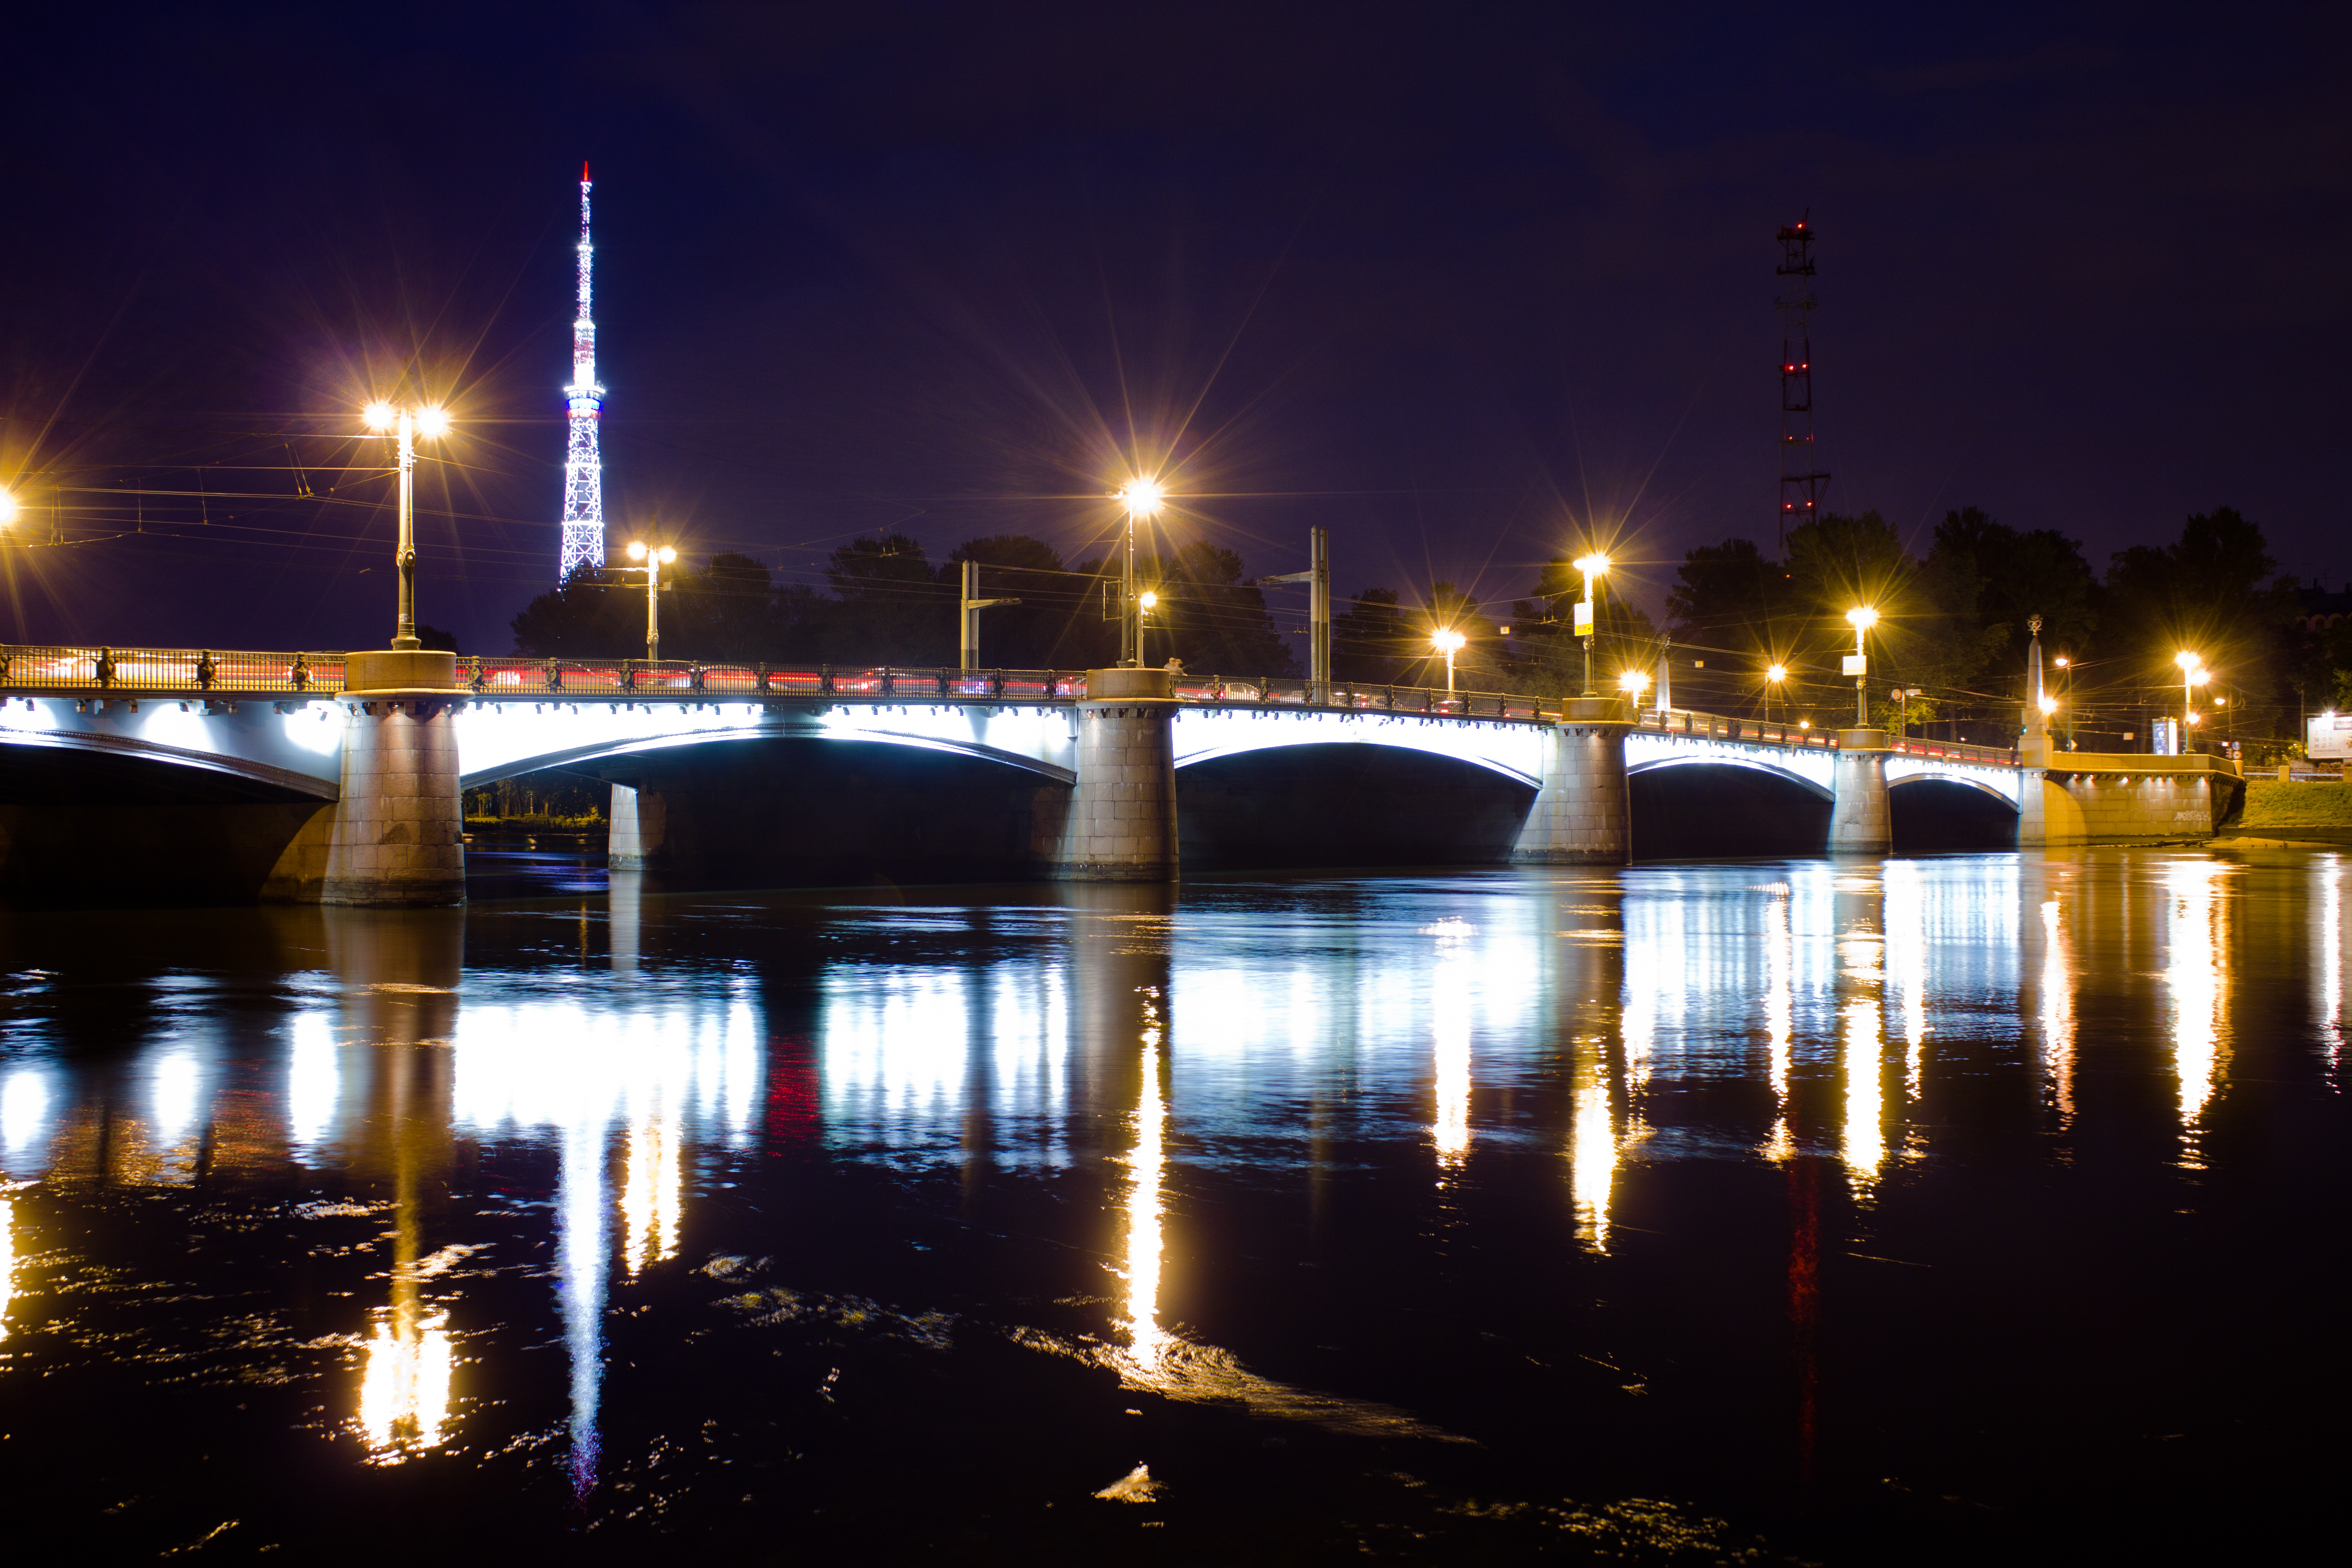 Каменноостровский мост в Санкт-Петербурге